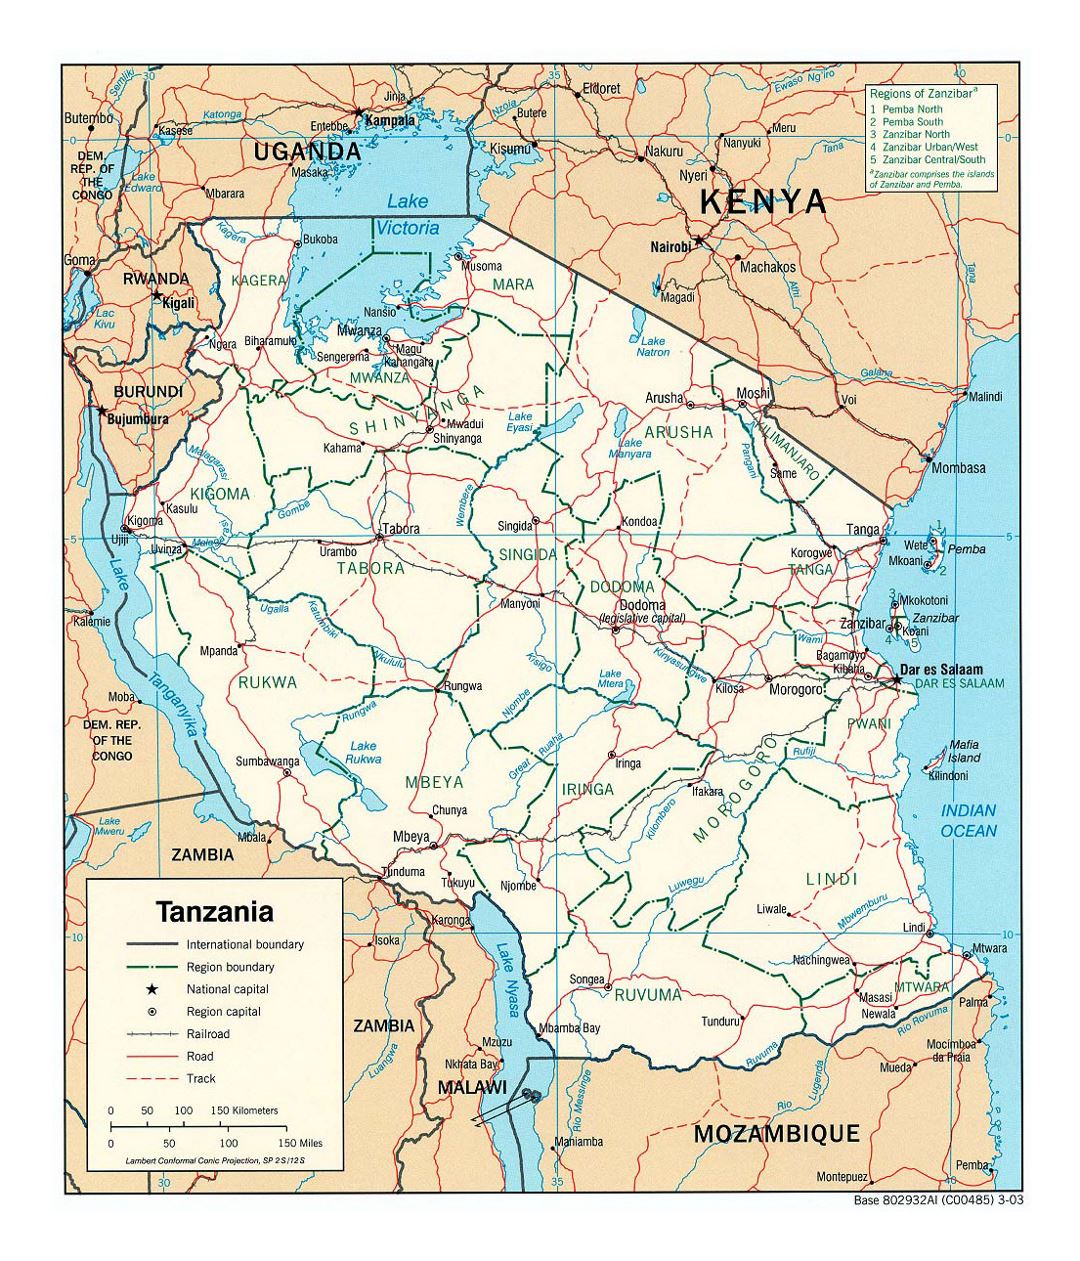 Детальная политическая и административная карта Танзании с дорогами, железными дорогами и крупными городами - 2003